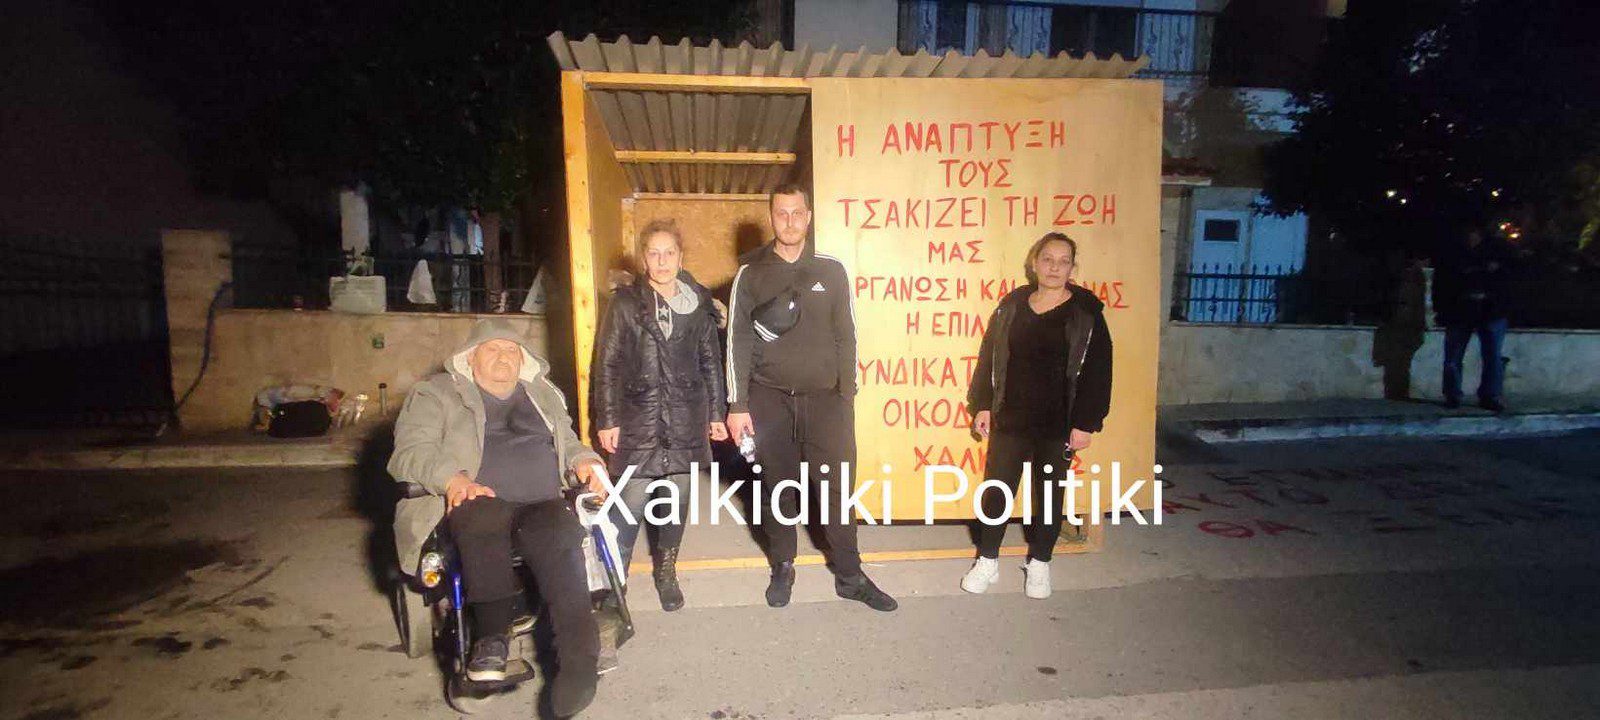 Χαλκιδική: Τραμπουκισμός στην υπηρεσία των funds – Για 2η φορά πέταξαν έξω απ’ το σπίτι του τον ανάπηρο 81χρονο – Μένει σε παράγκα!